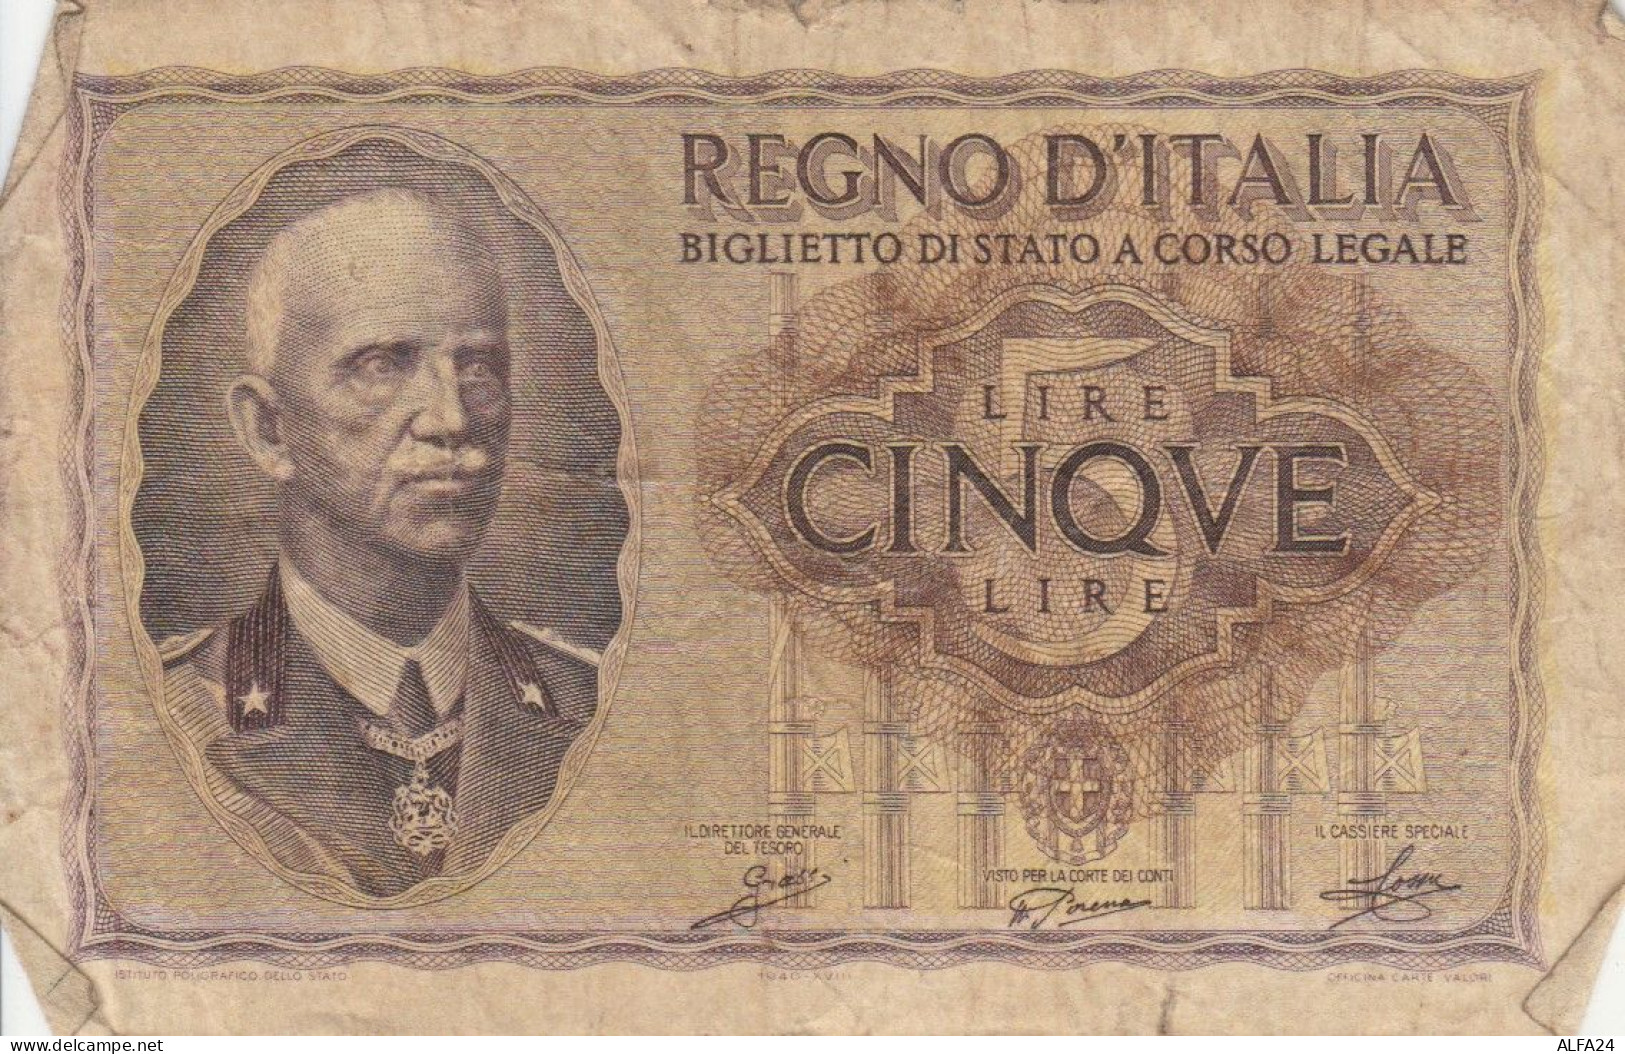 BANCONOTA ITALIA LIRE 5 1940 BIGLIETTO DI STATO VF (VS531 - Italia – 5 Lire